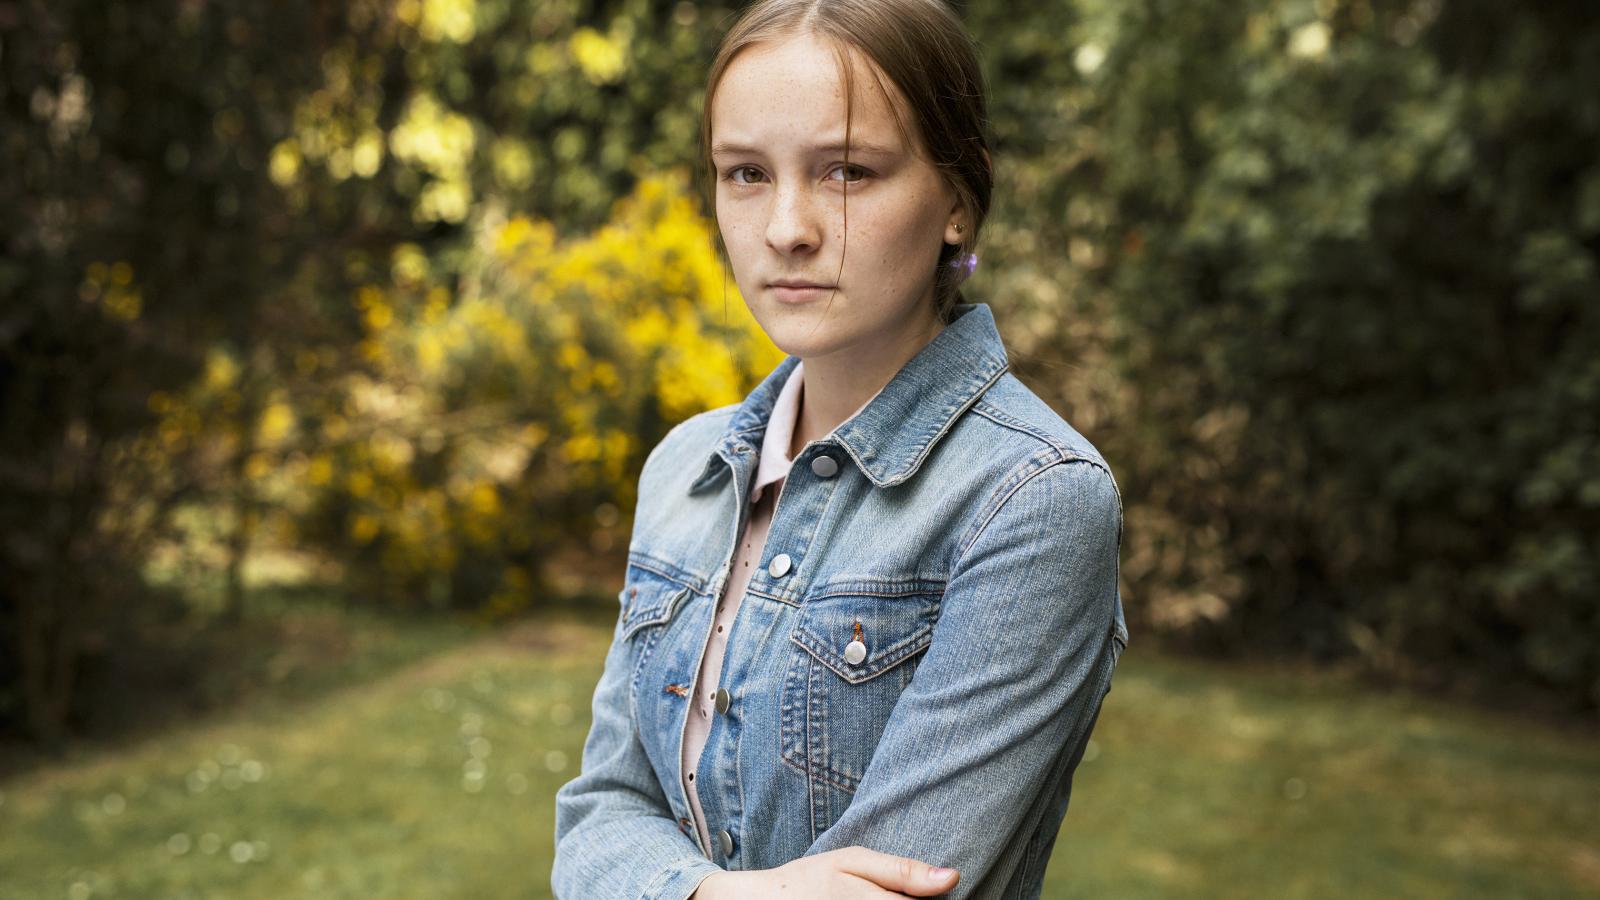 Young girl in denim jacket standing in garden